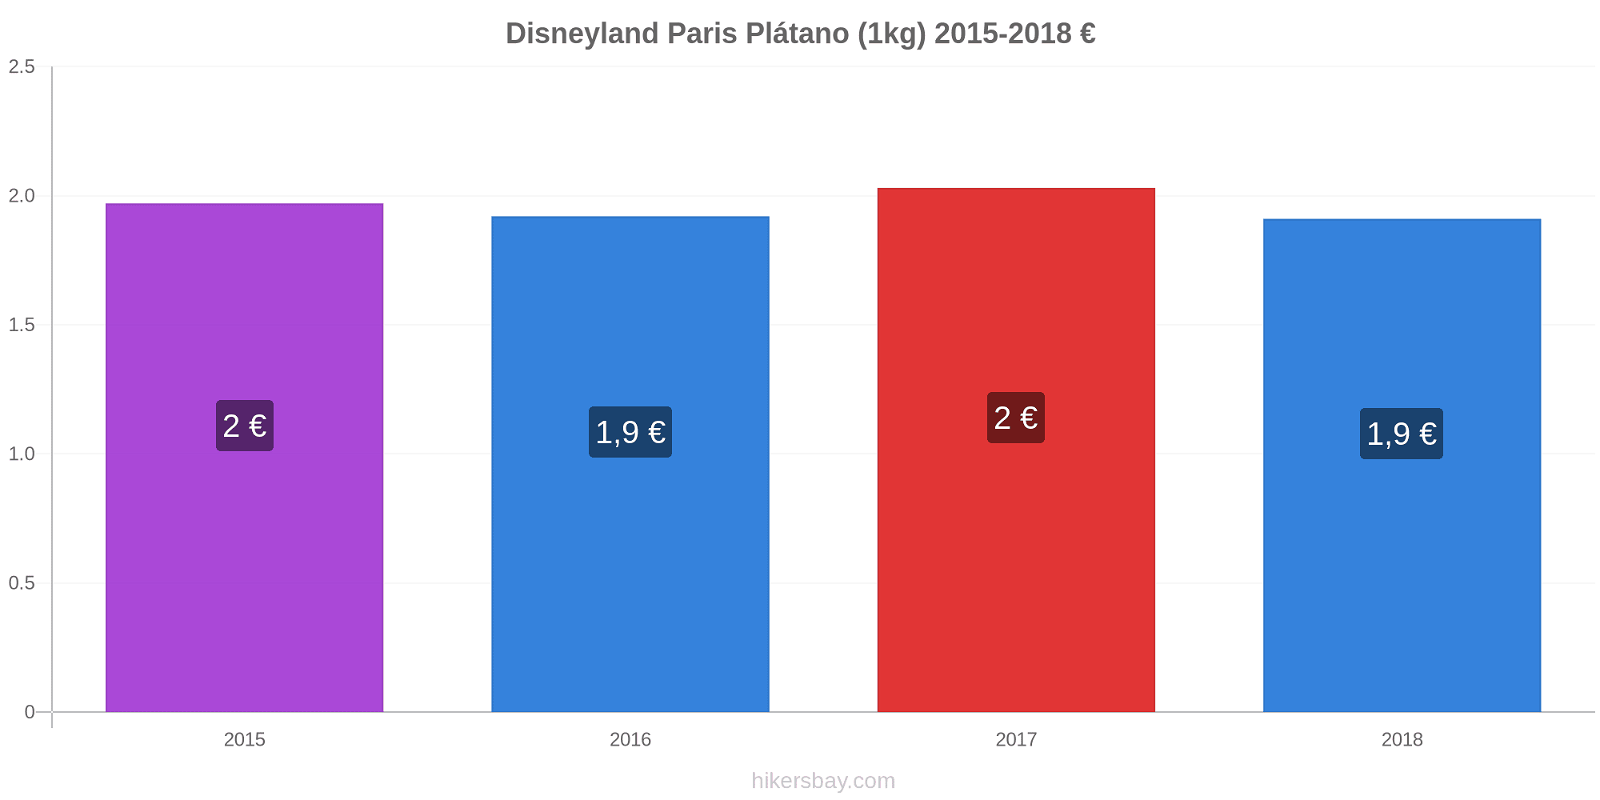 Disneyland Paris cambios de precios Plátano (1kg) hikersbay.com